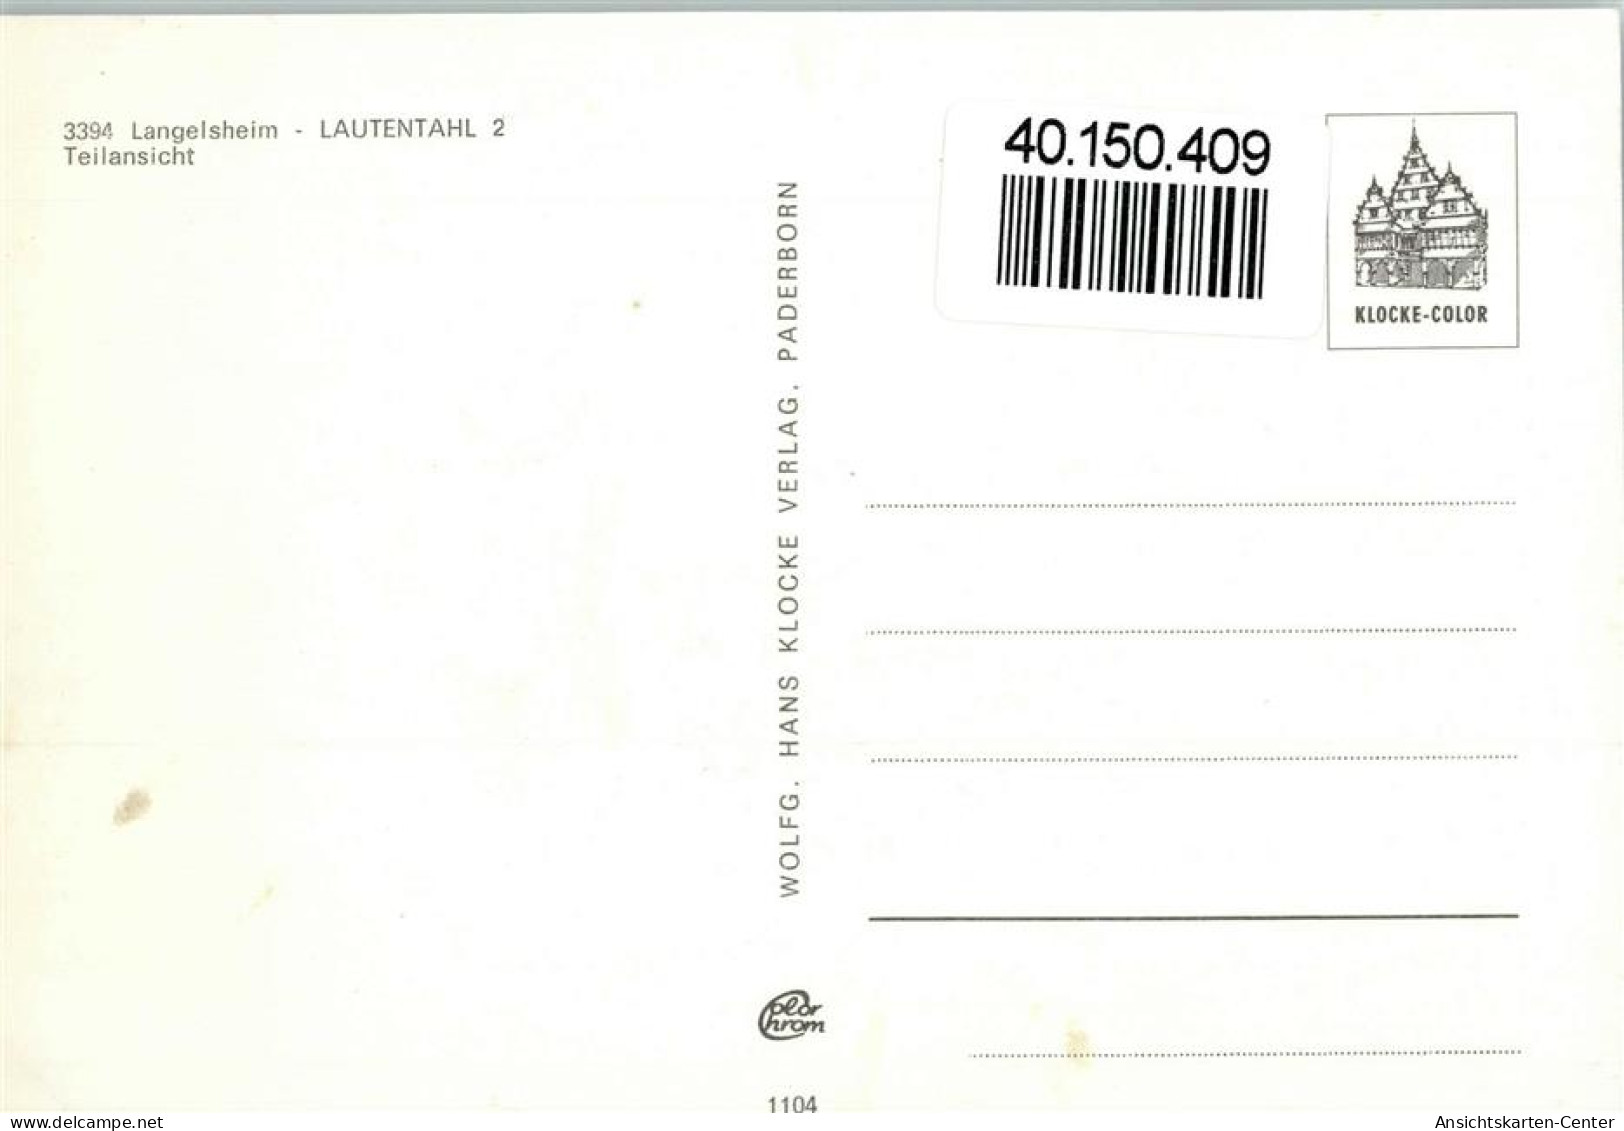 40150409 - Lautenthal - Langelsheim